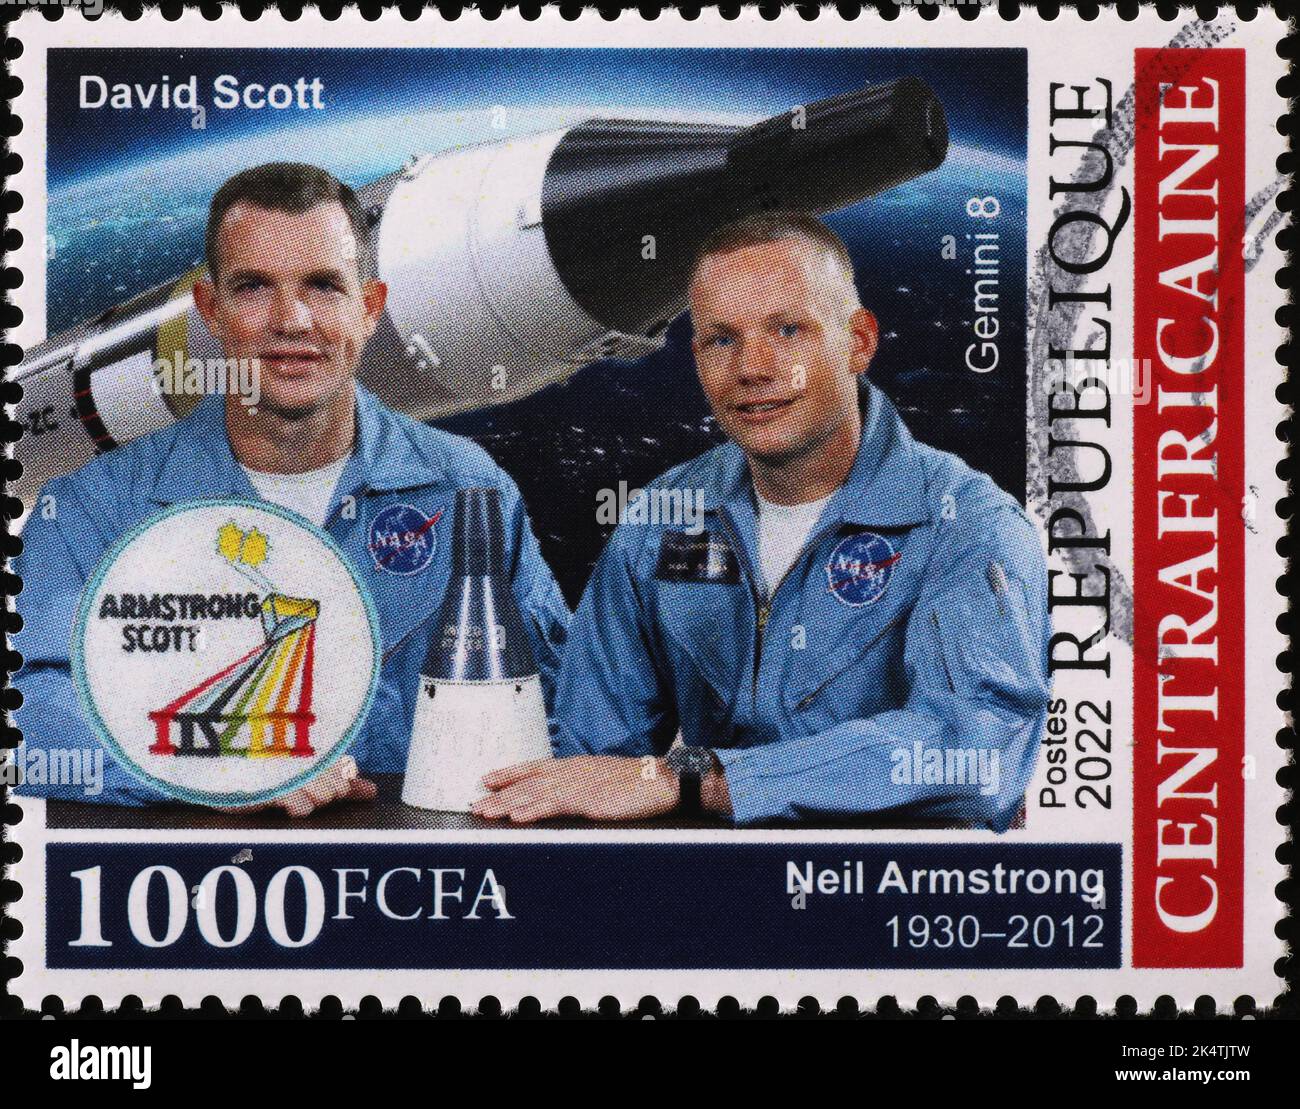 Les astronautes Neil Amstrong et David Scott sur leur timbre-poste Banque D'Images